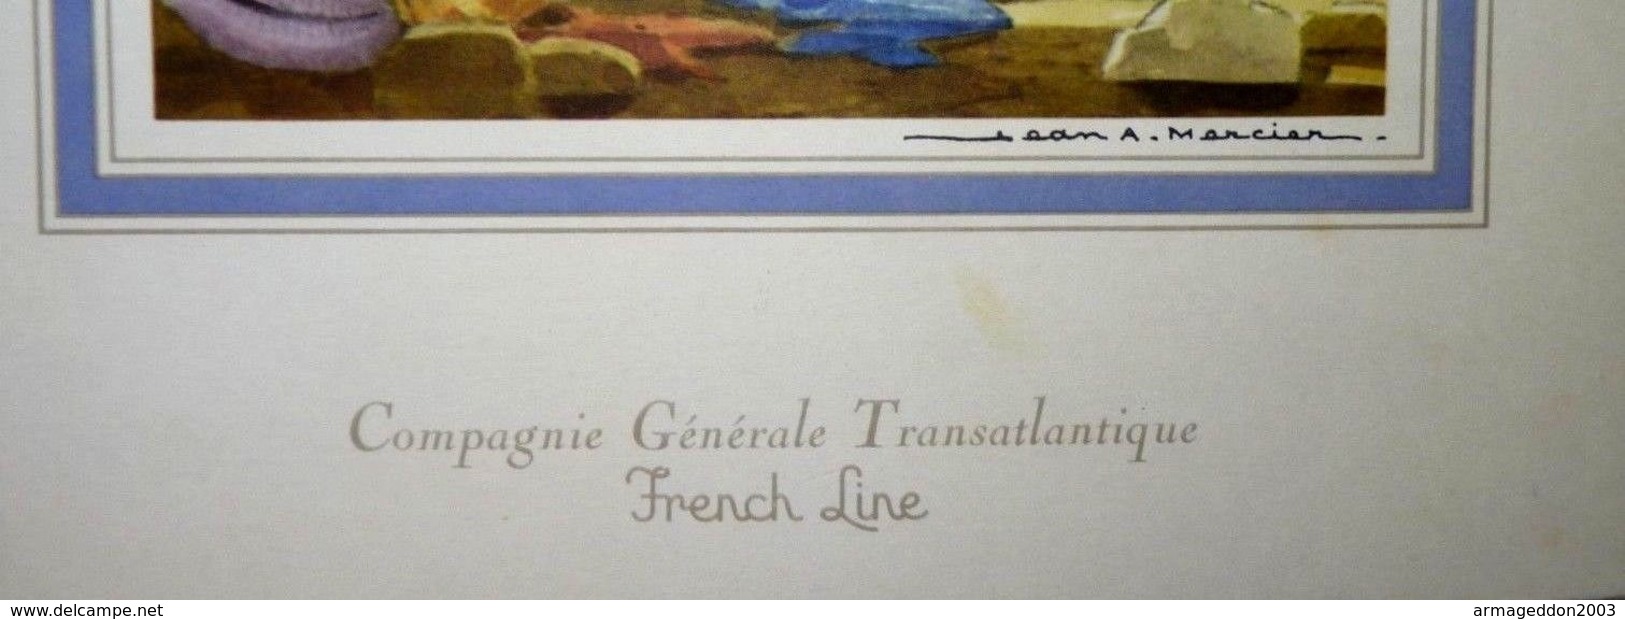 MENU PAQUEBOT "LE FRANCE" FRENCH LINE 26.03 1968 Jean A. Mercier TRANSATLANTIQUE  27 X 21 Cm Environ  BE - Menus